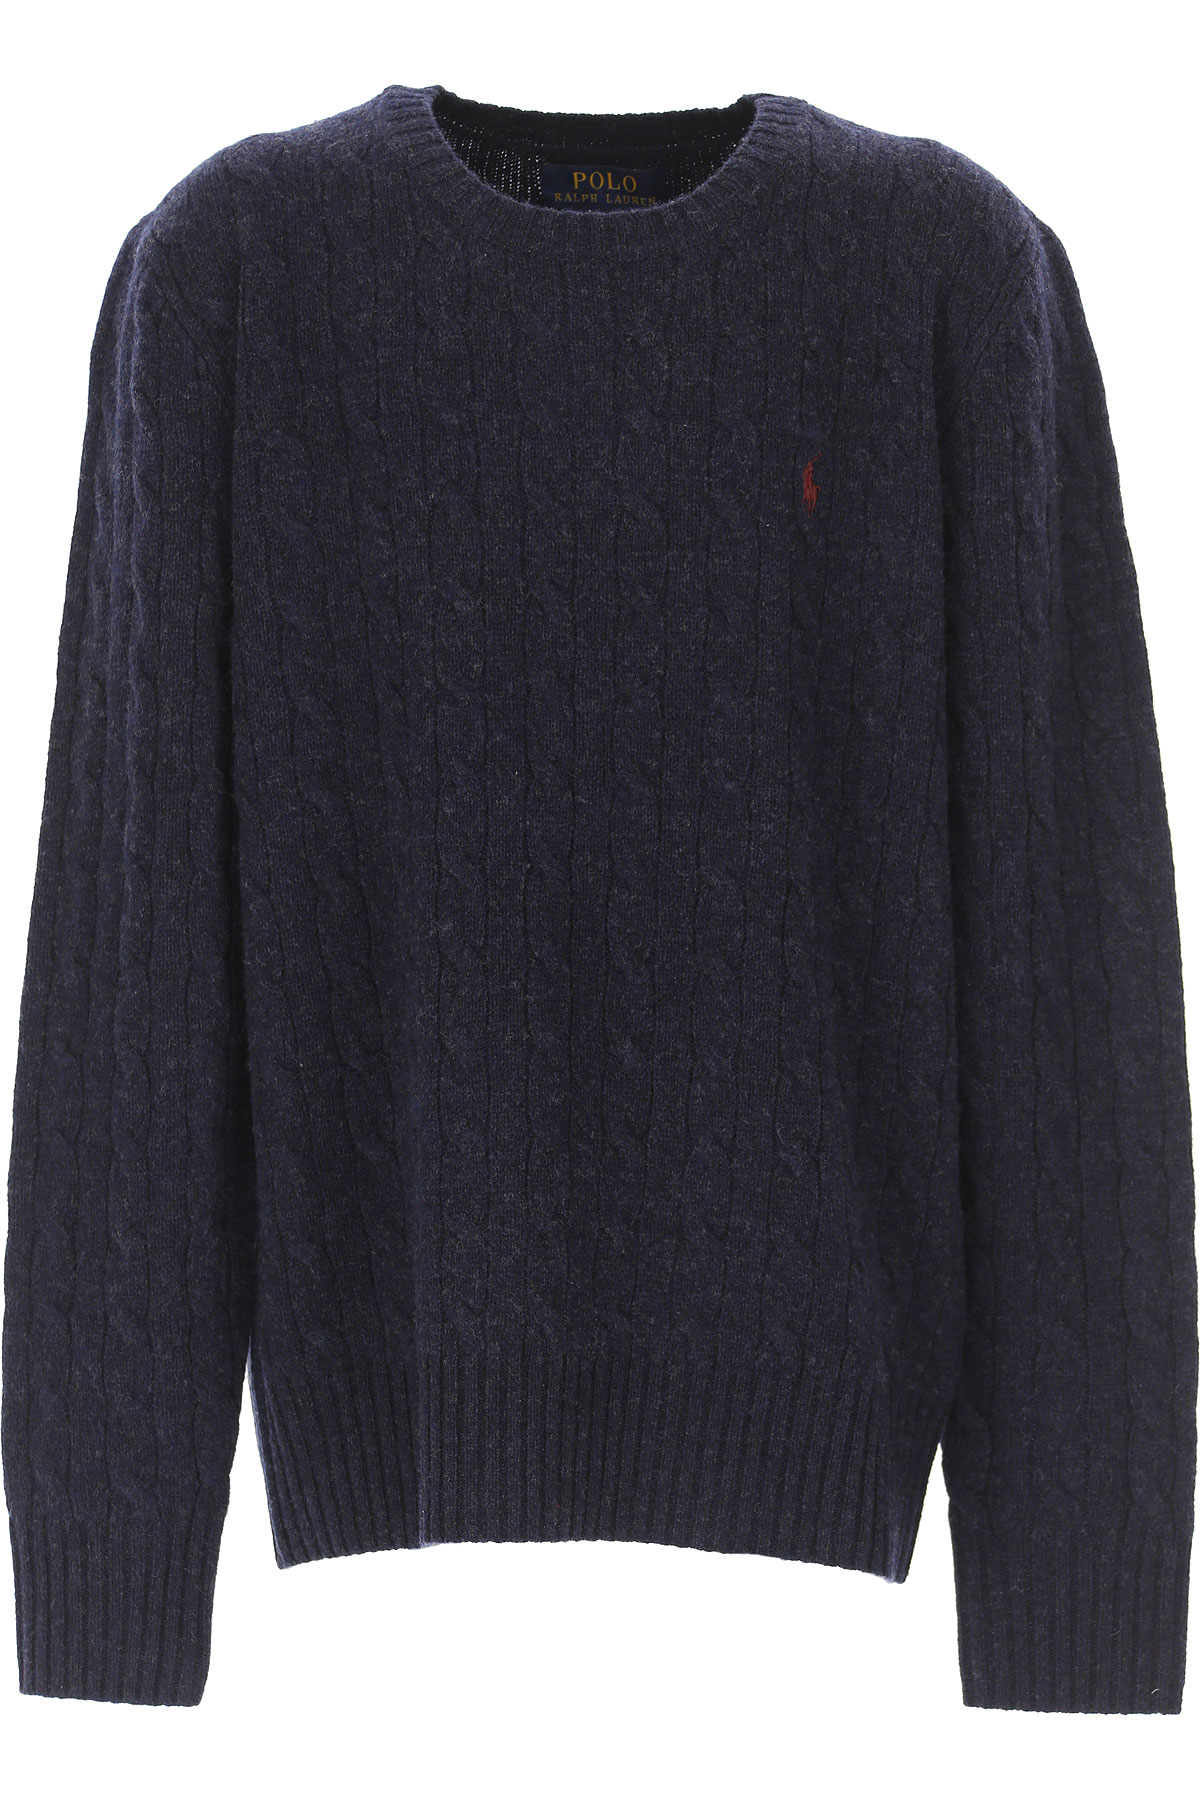 Ralph Lauren Kinder Pullover für Jungen Günstig im Sale, Marine blau, Wolle, 2017, M S XL